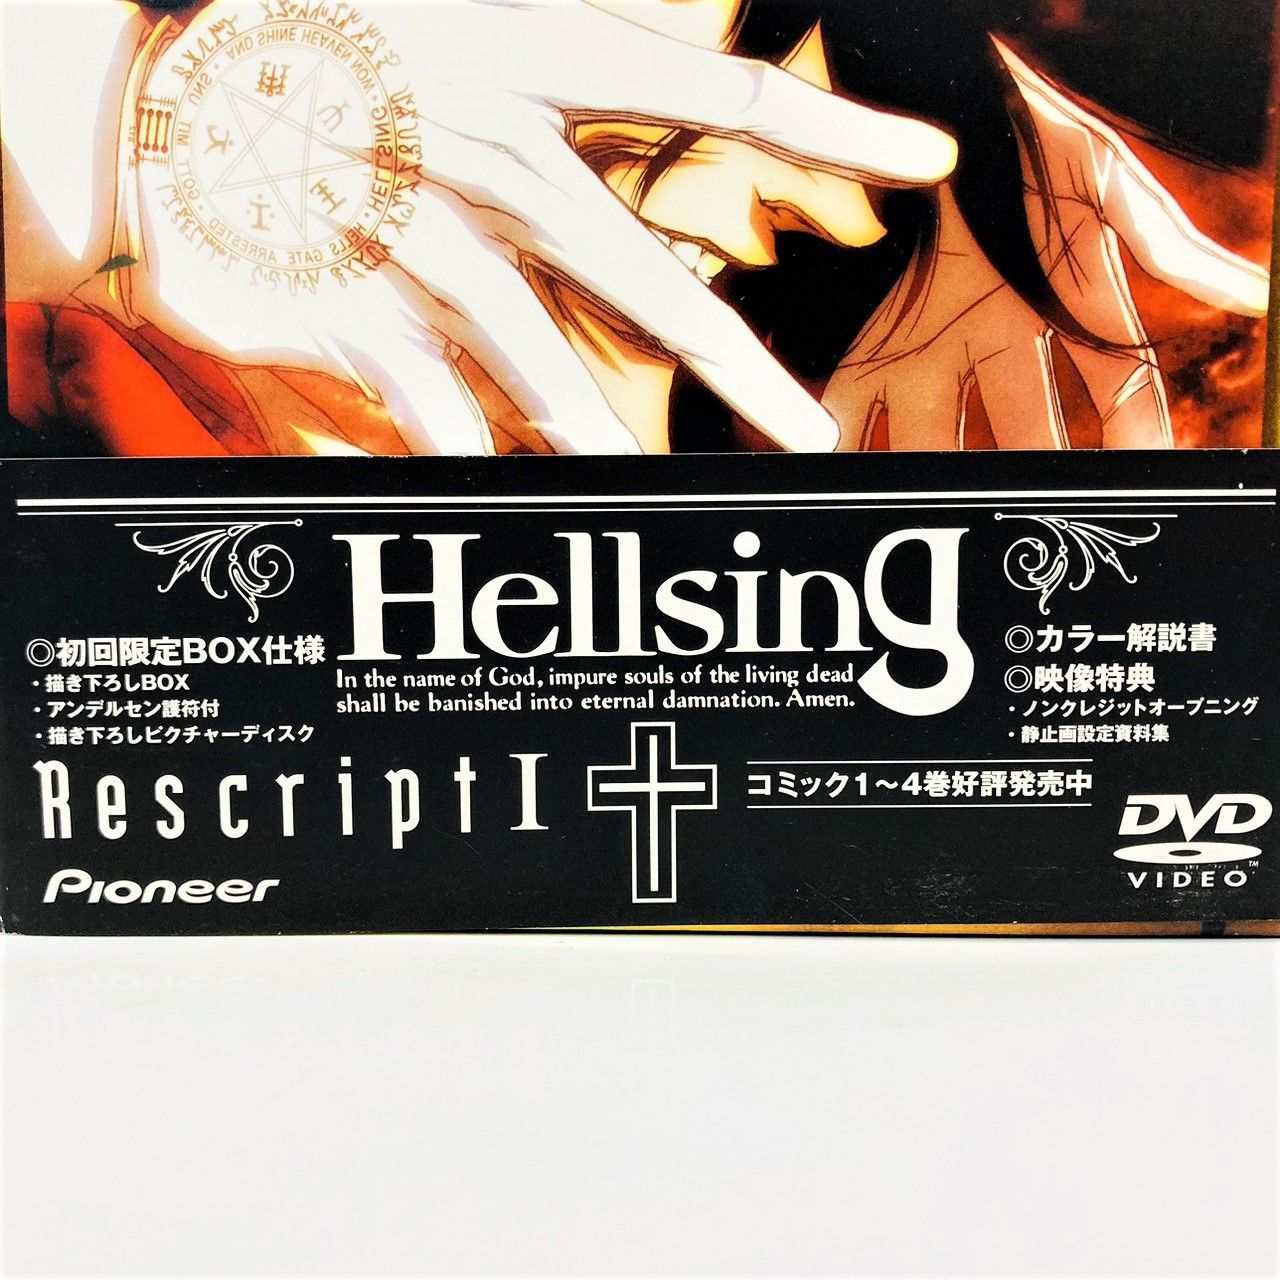 ◇【初回限定盤】Hellsing ヘルシング Rescript I DVD BOX 1 2 3 4 5 